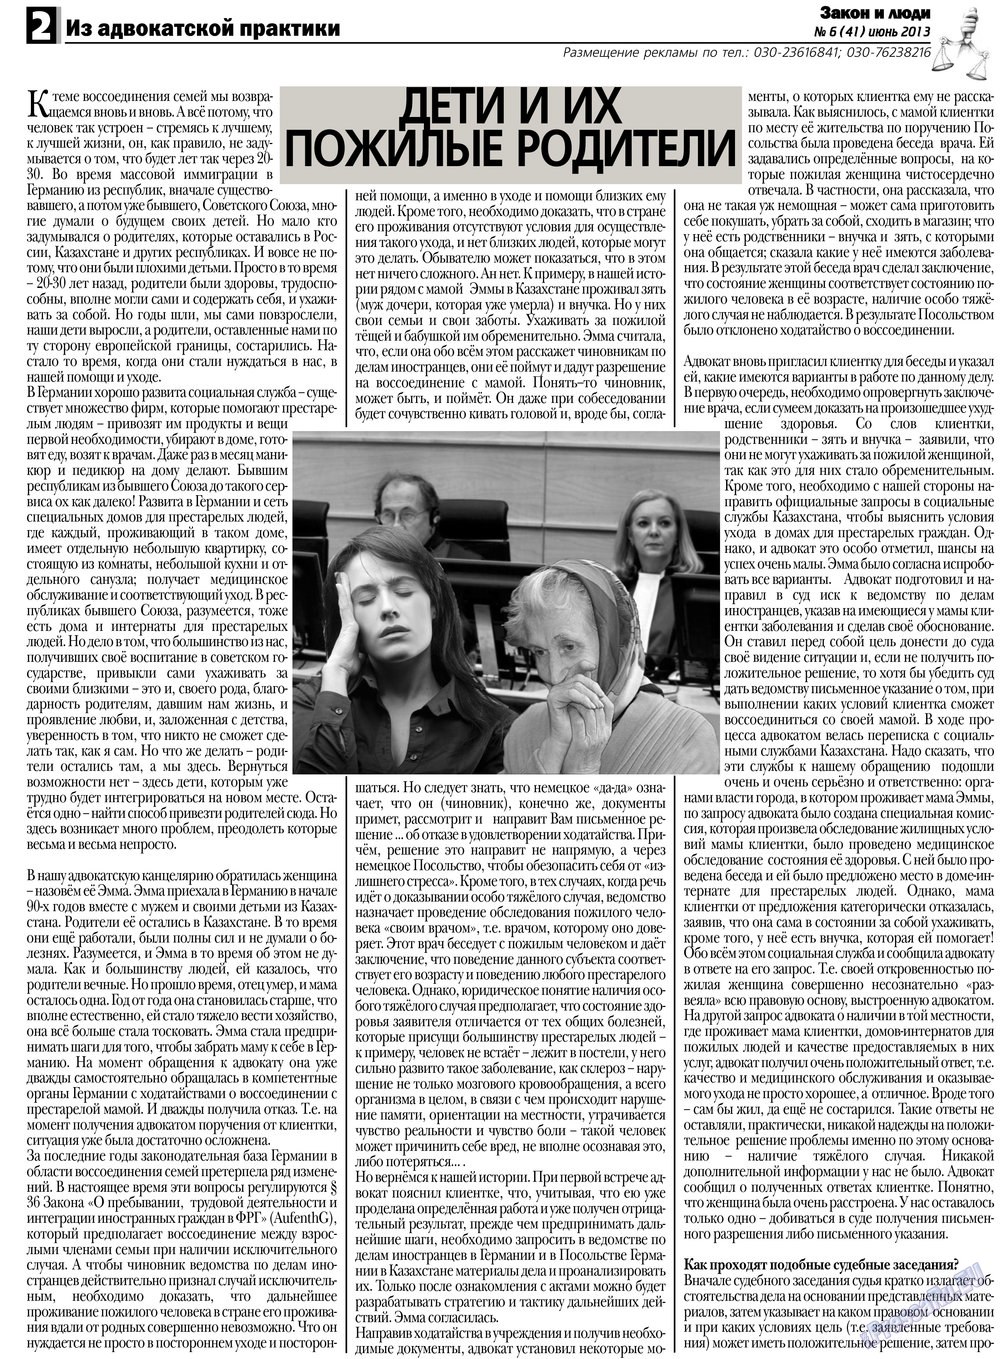 Закон и люди, газета. 2013 №6 стр.2